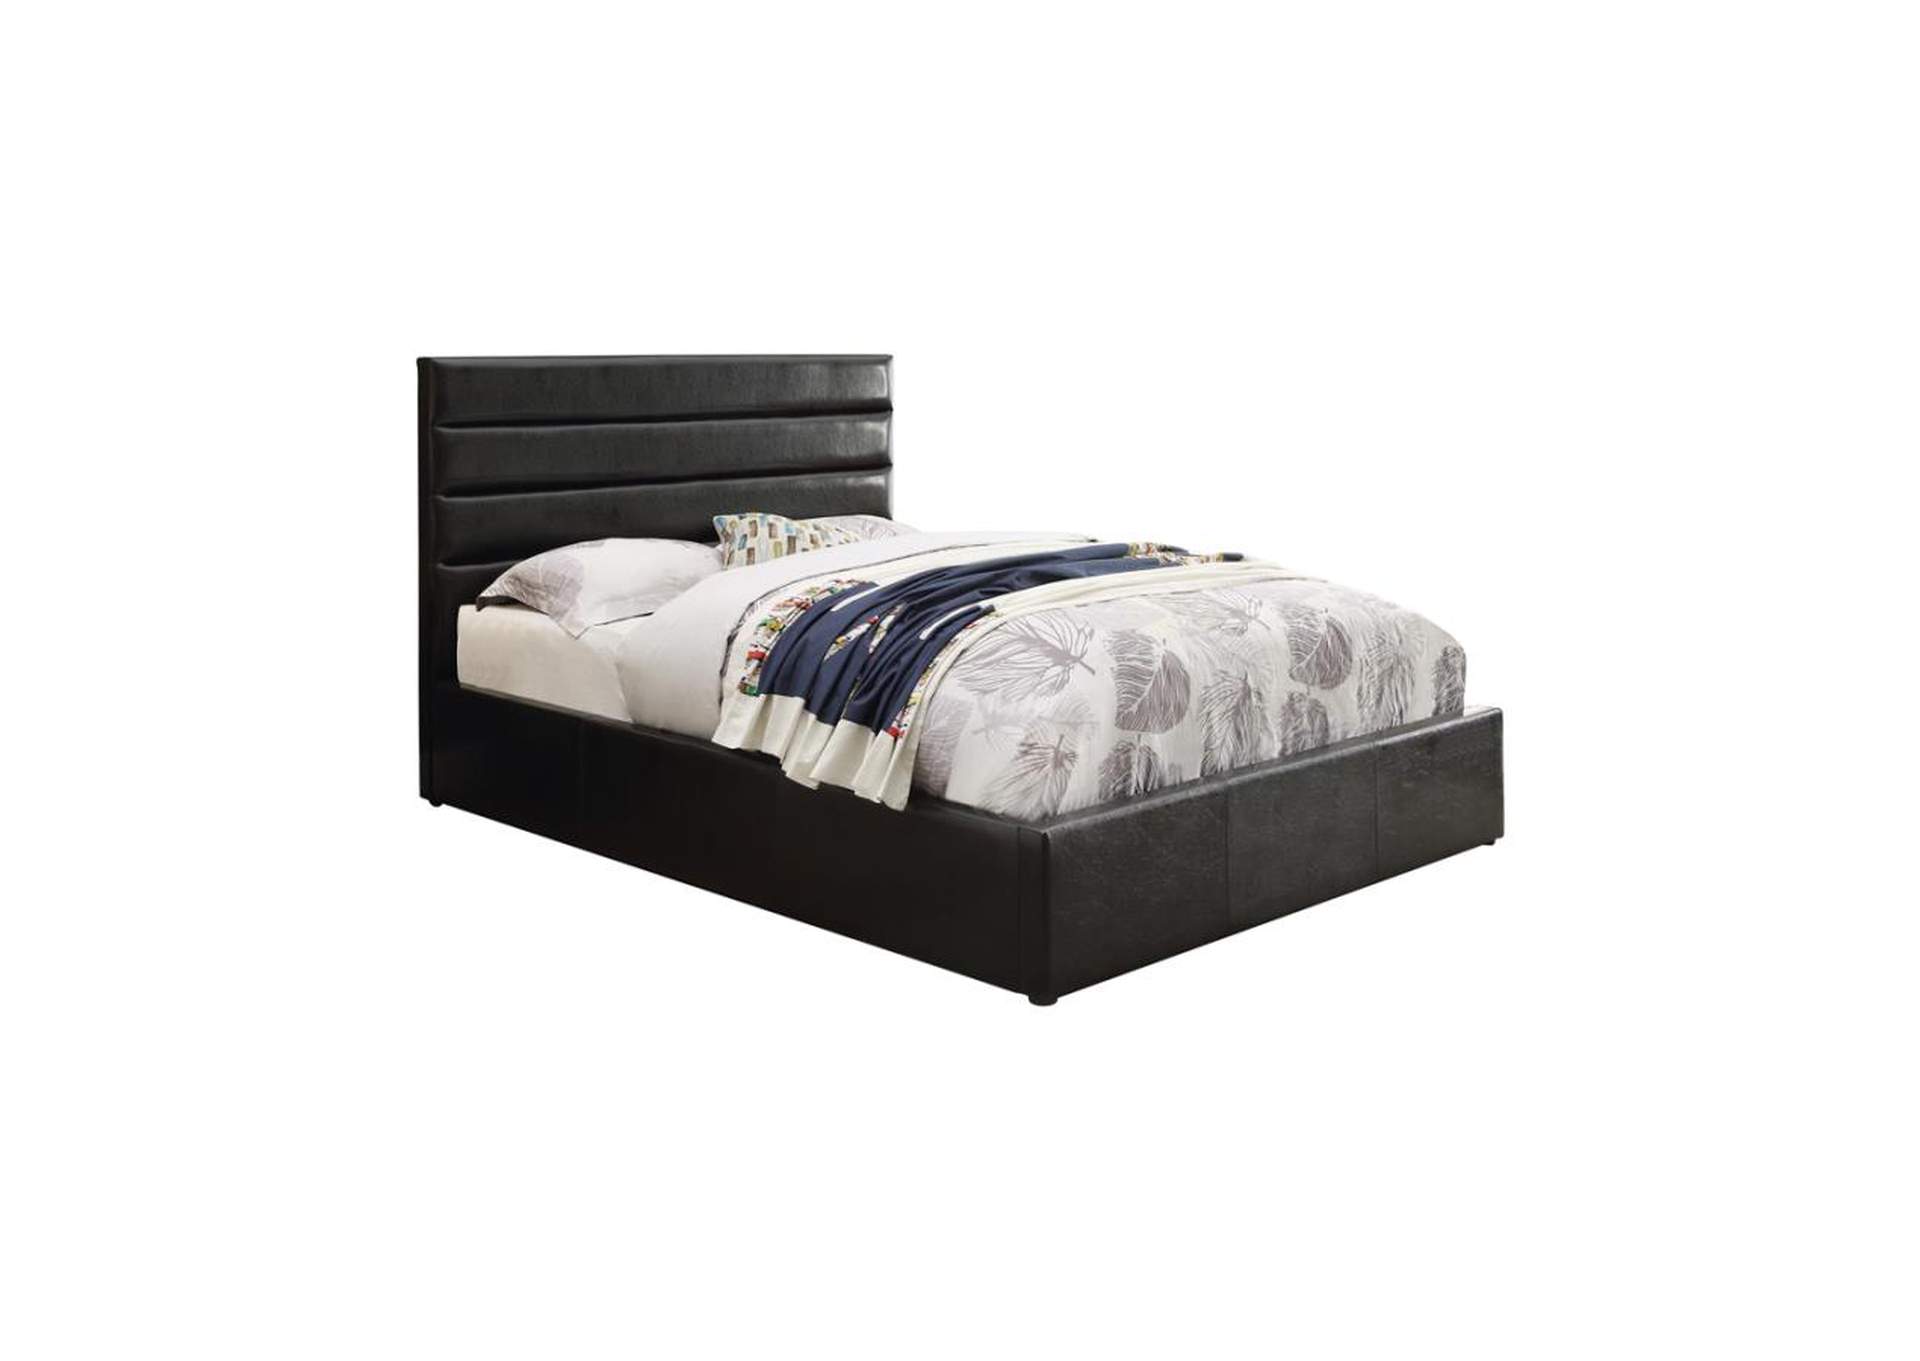 Riverbend Queen Upholstered Storage Bed Black,Coaster Furniture